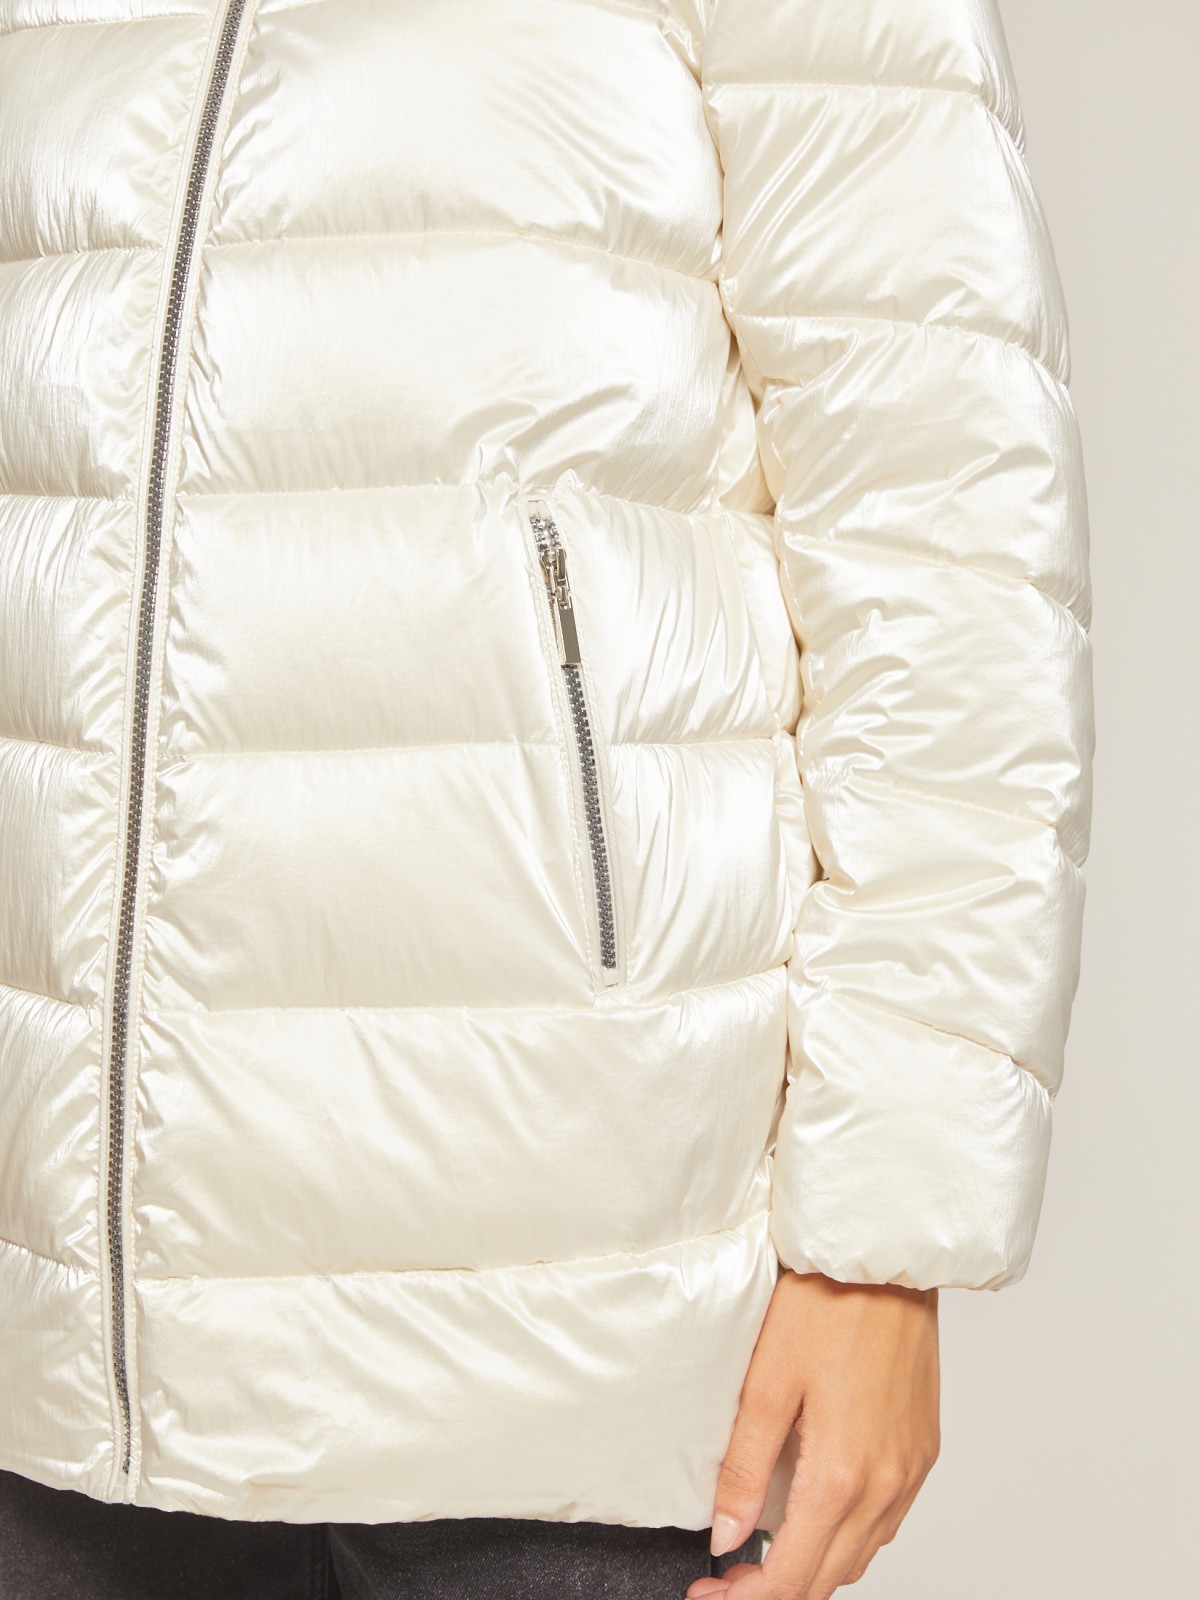 Утеплённая куртка с меховой опушкой zolla 020345112724, цвет молоко, размер XS - фото 5